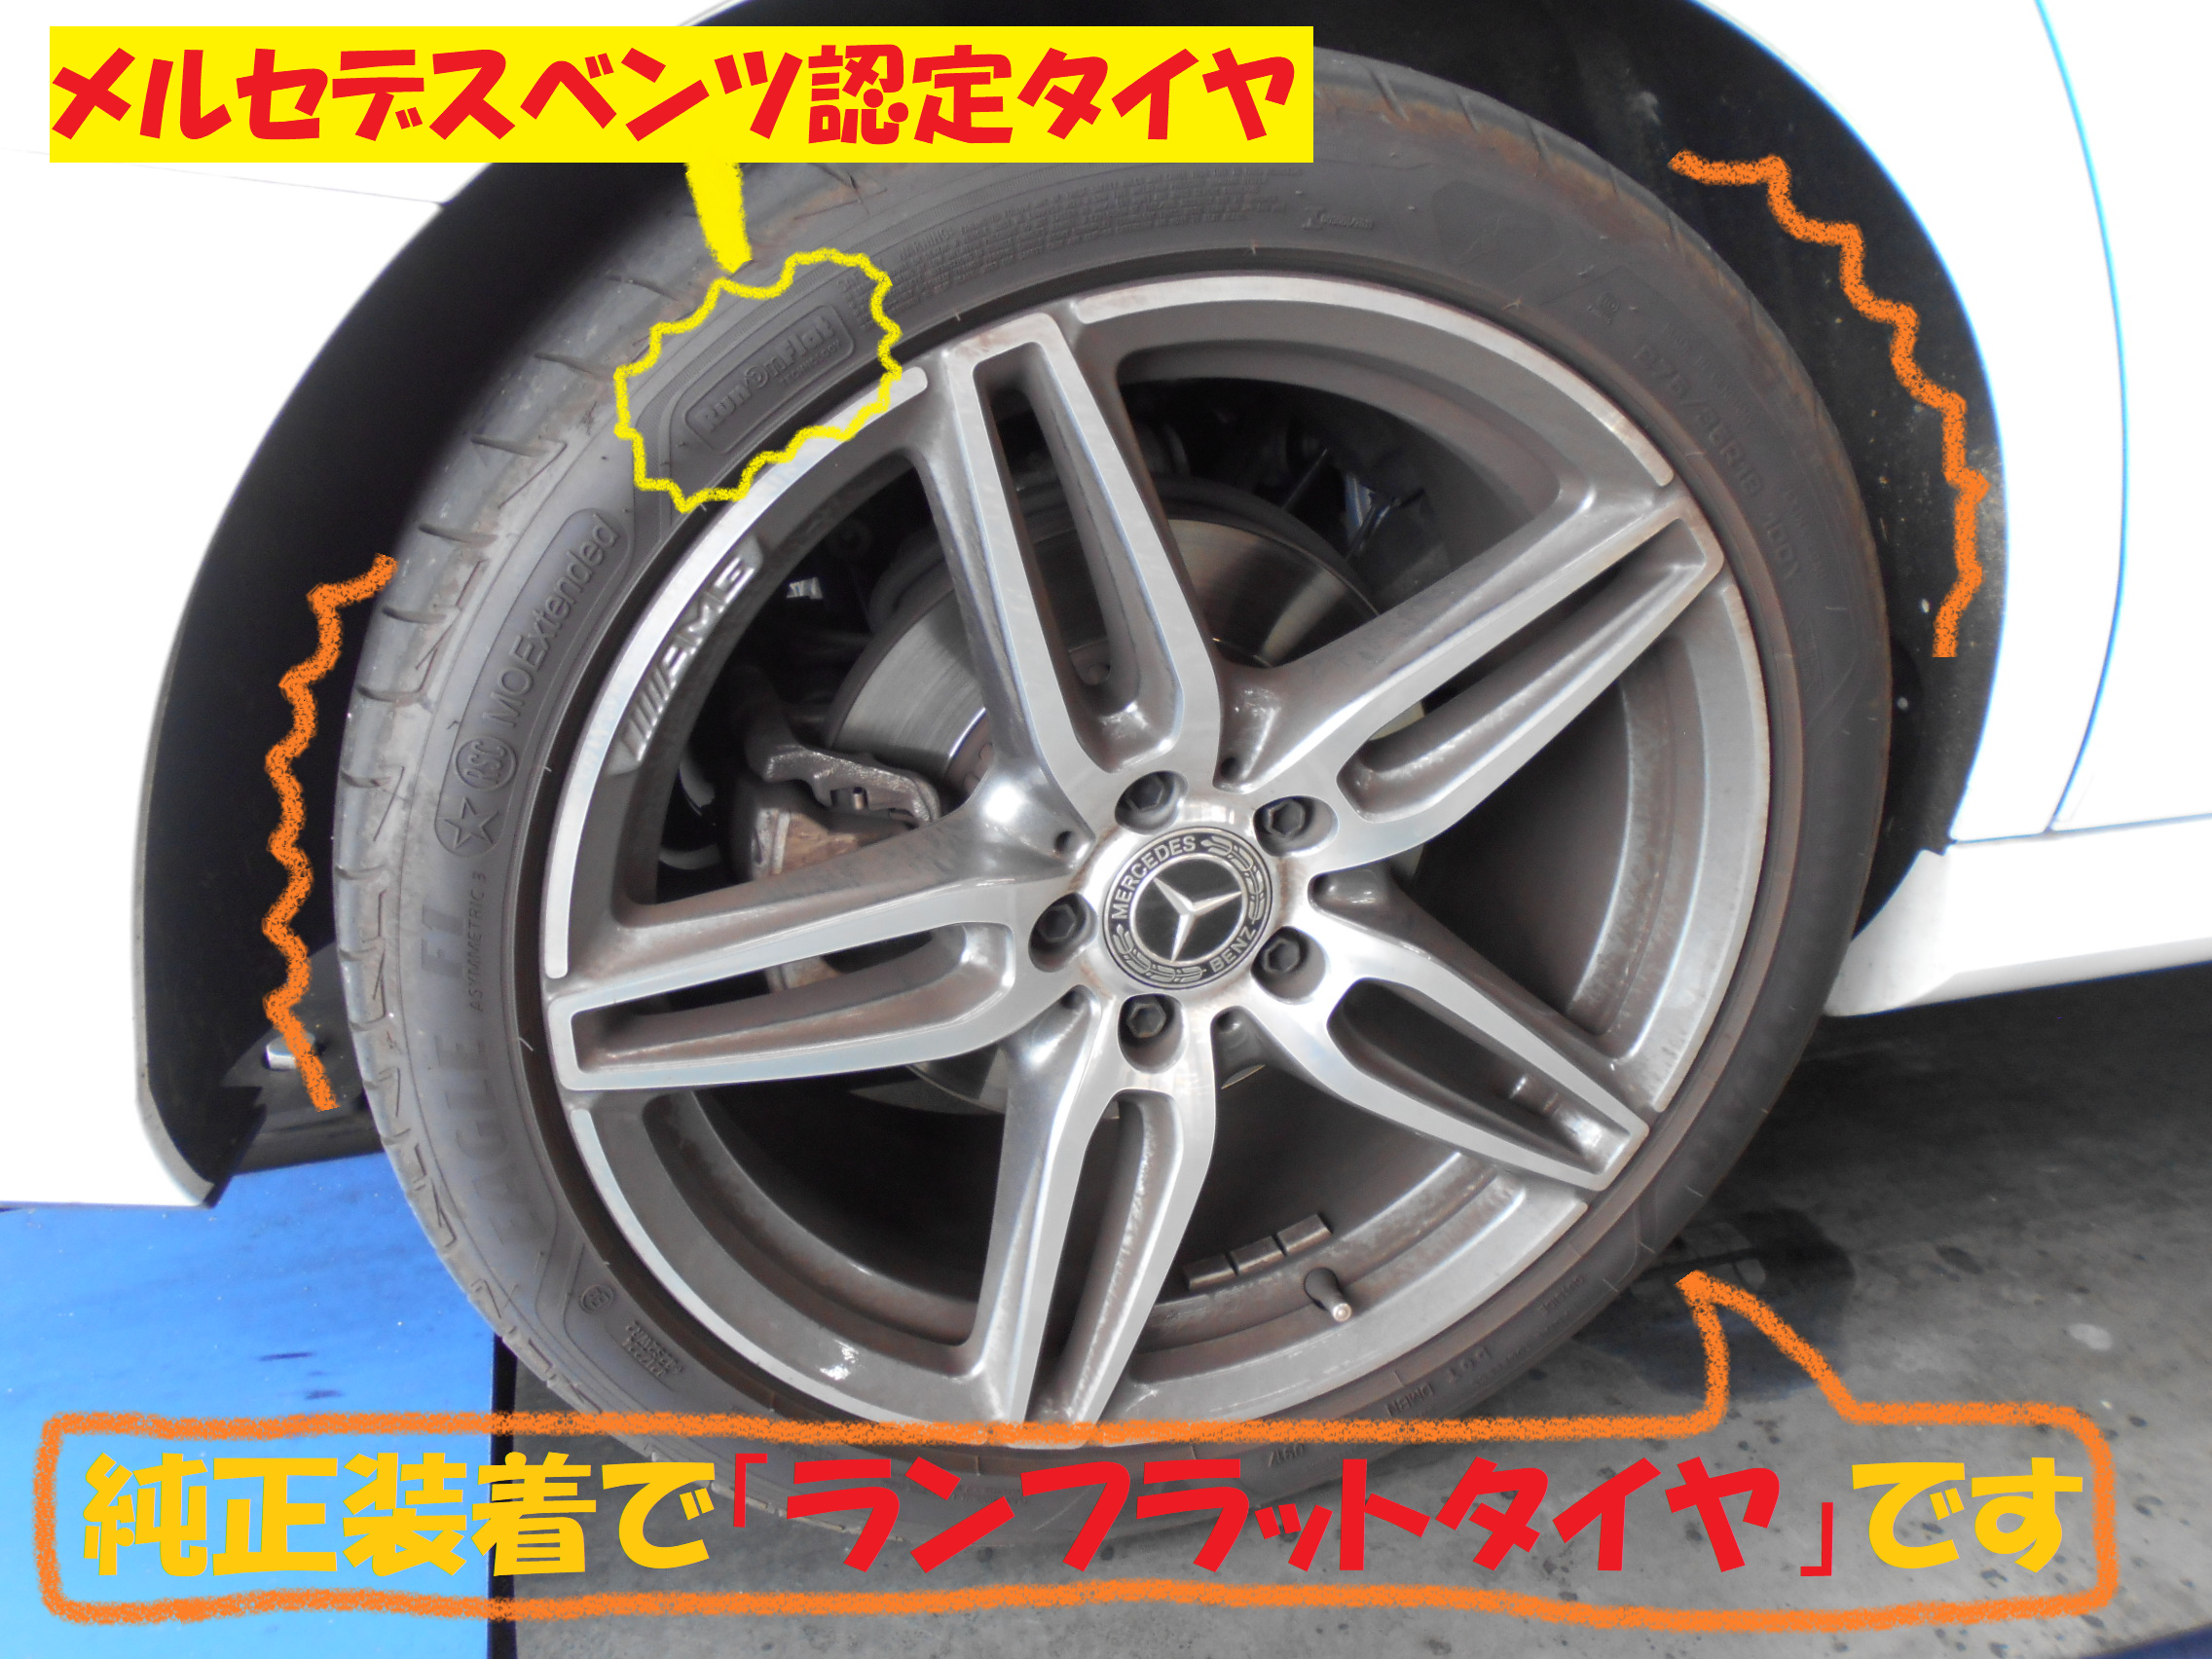 【輸入車作業】 メルセデス・ベンツCLA220 タイヤ交換作業です | メルセデス・ベンツ CLAクラス タイヤ タイヤ・ホイール関連